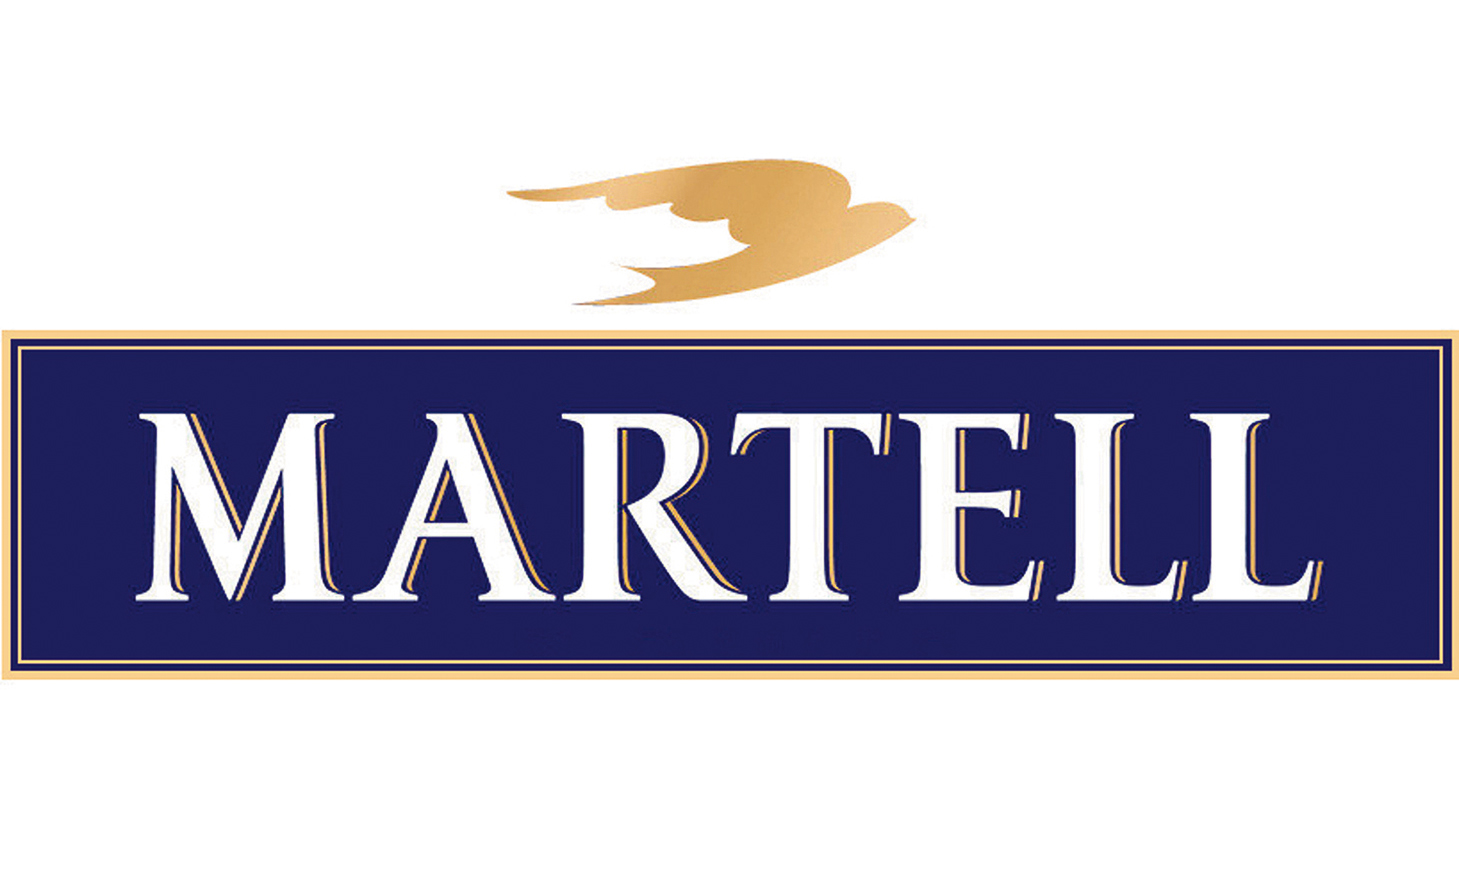 马爹利标志 logo图片